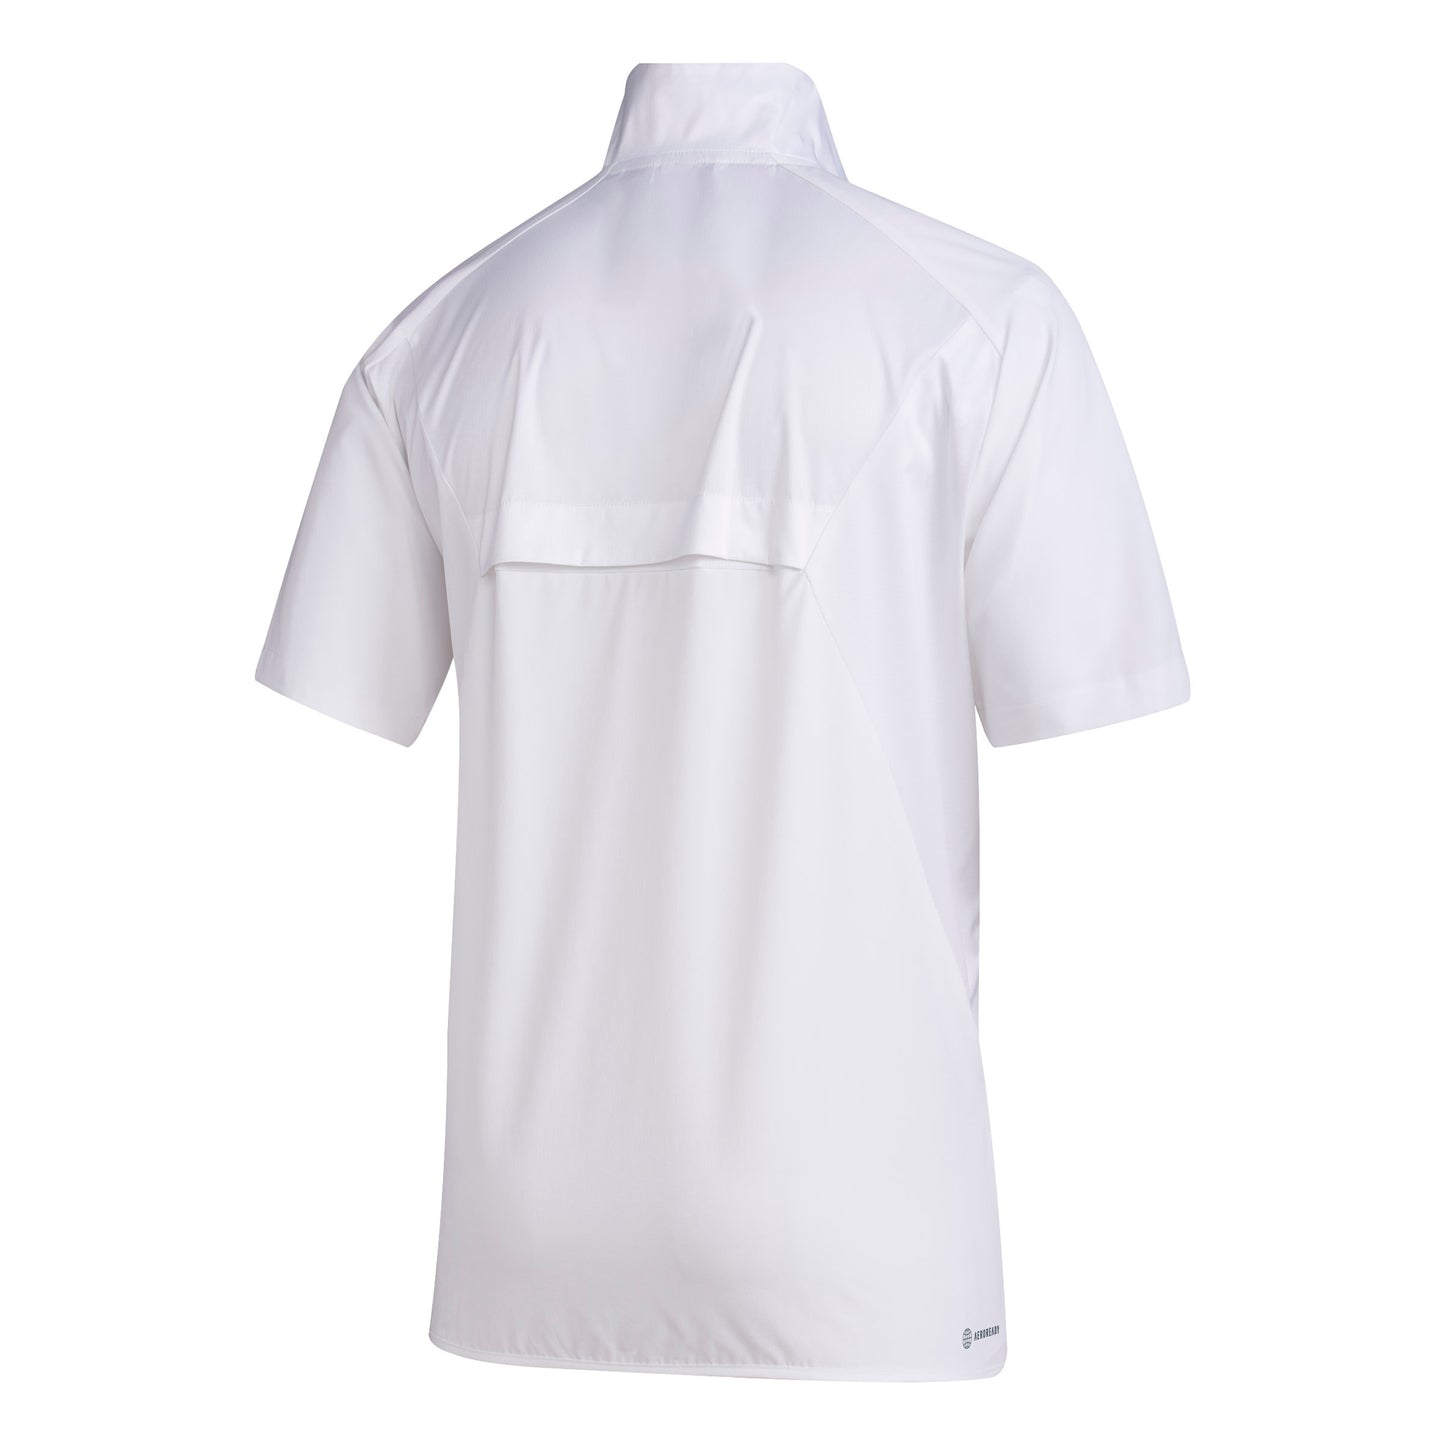 ADIDAS - Sidelines Coach 1/4 Zip - White Short Sleeve